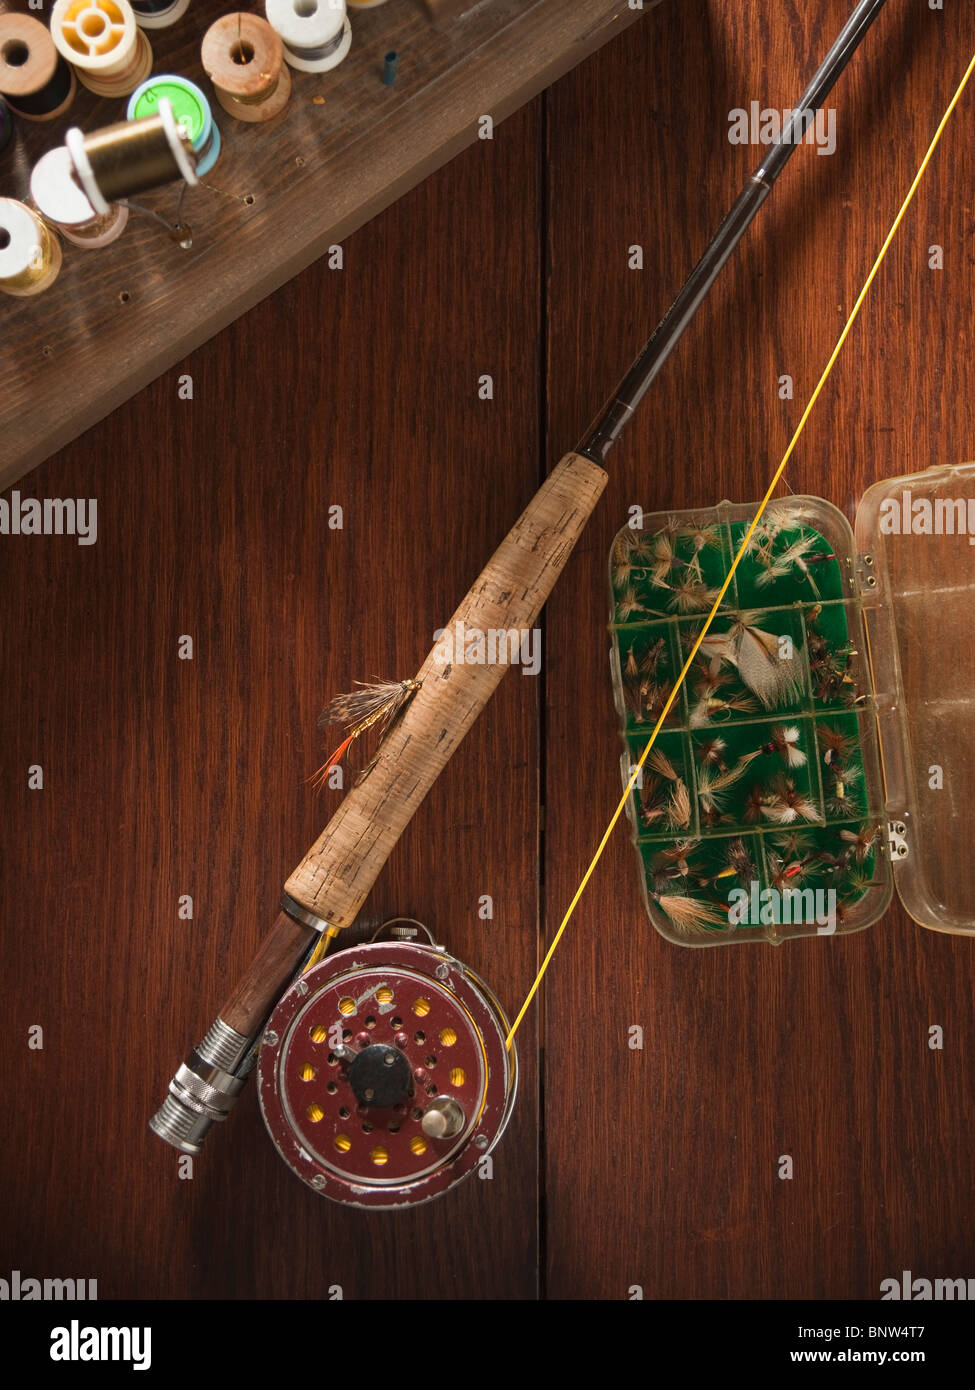 Fishing rod and equipment Stock Photo